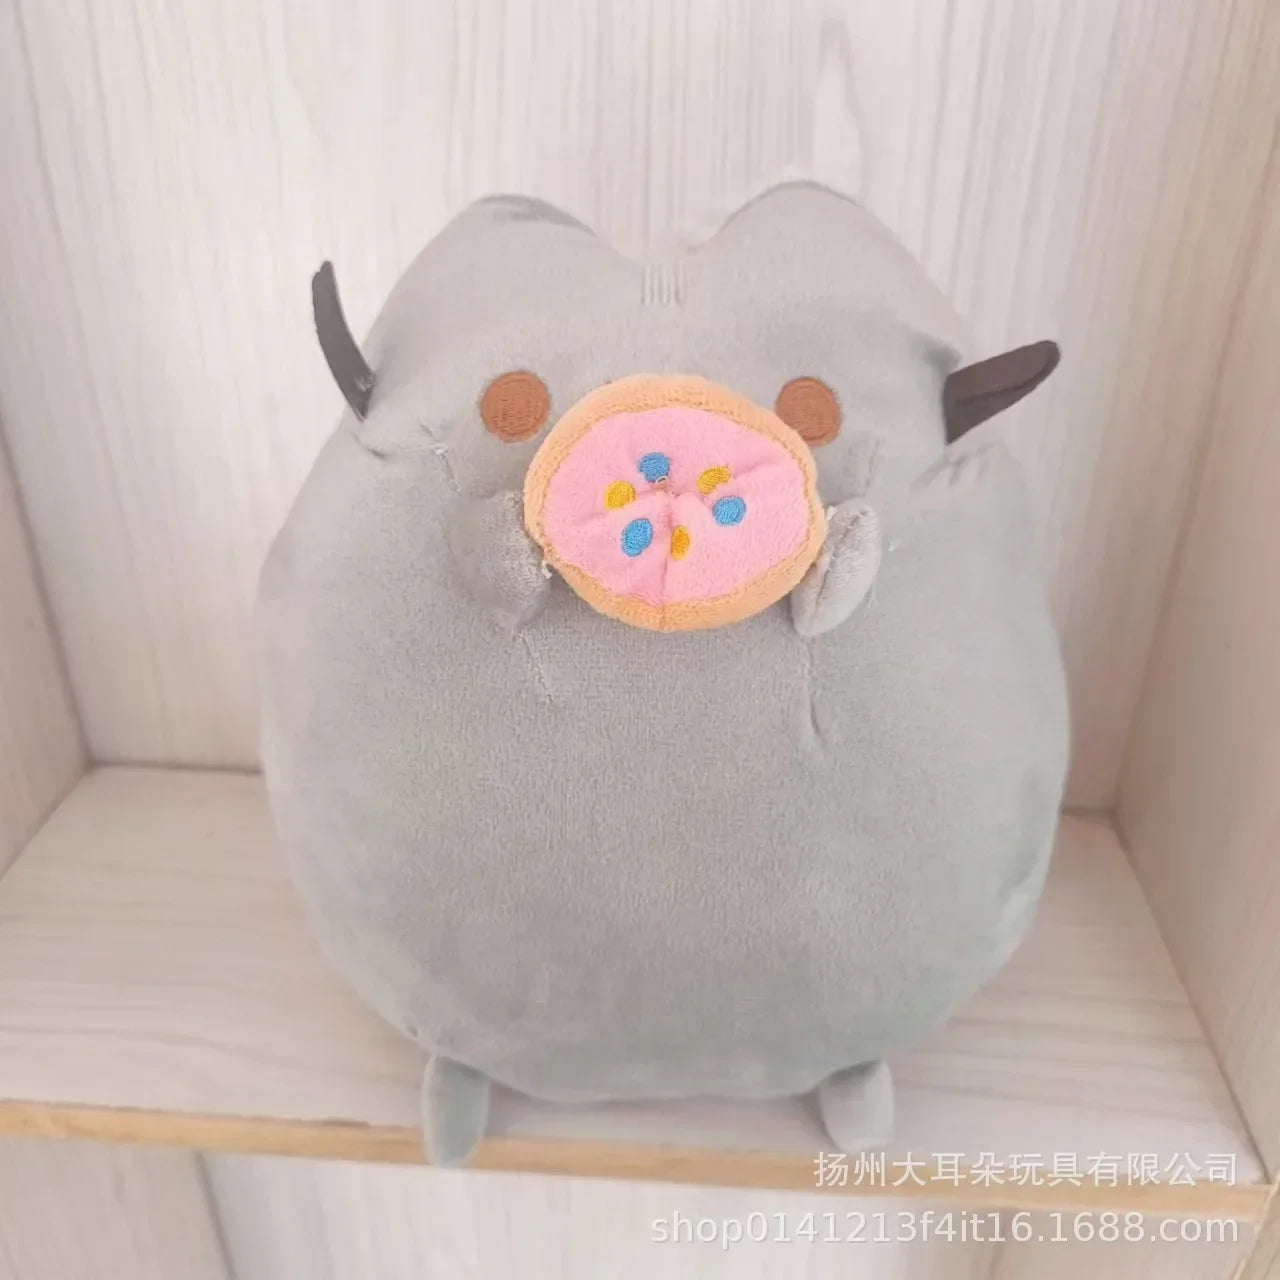 Cute Pusheen 24cm Stuffed Plushie